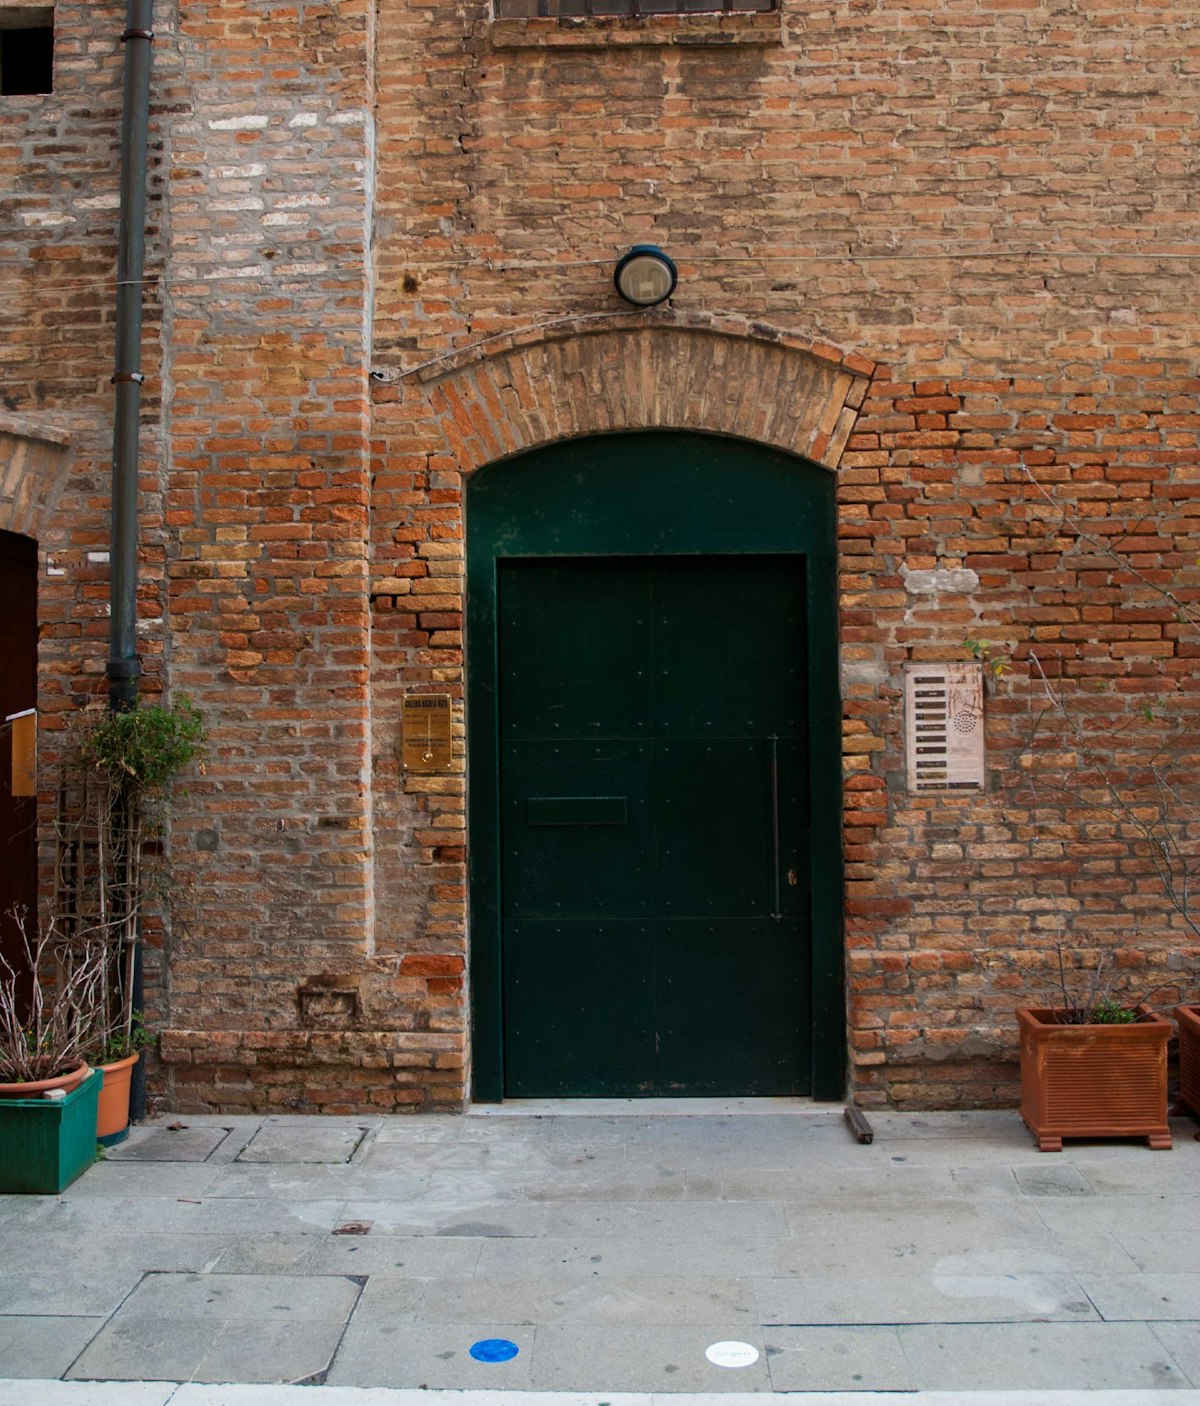 The unassuming entrance to Galleria Michela Rizzo